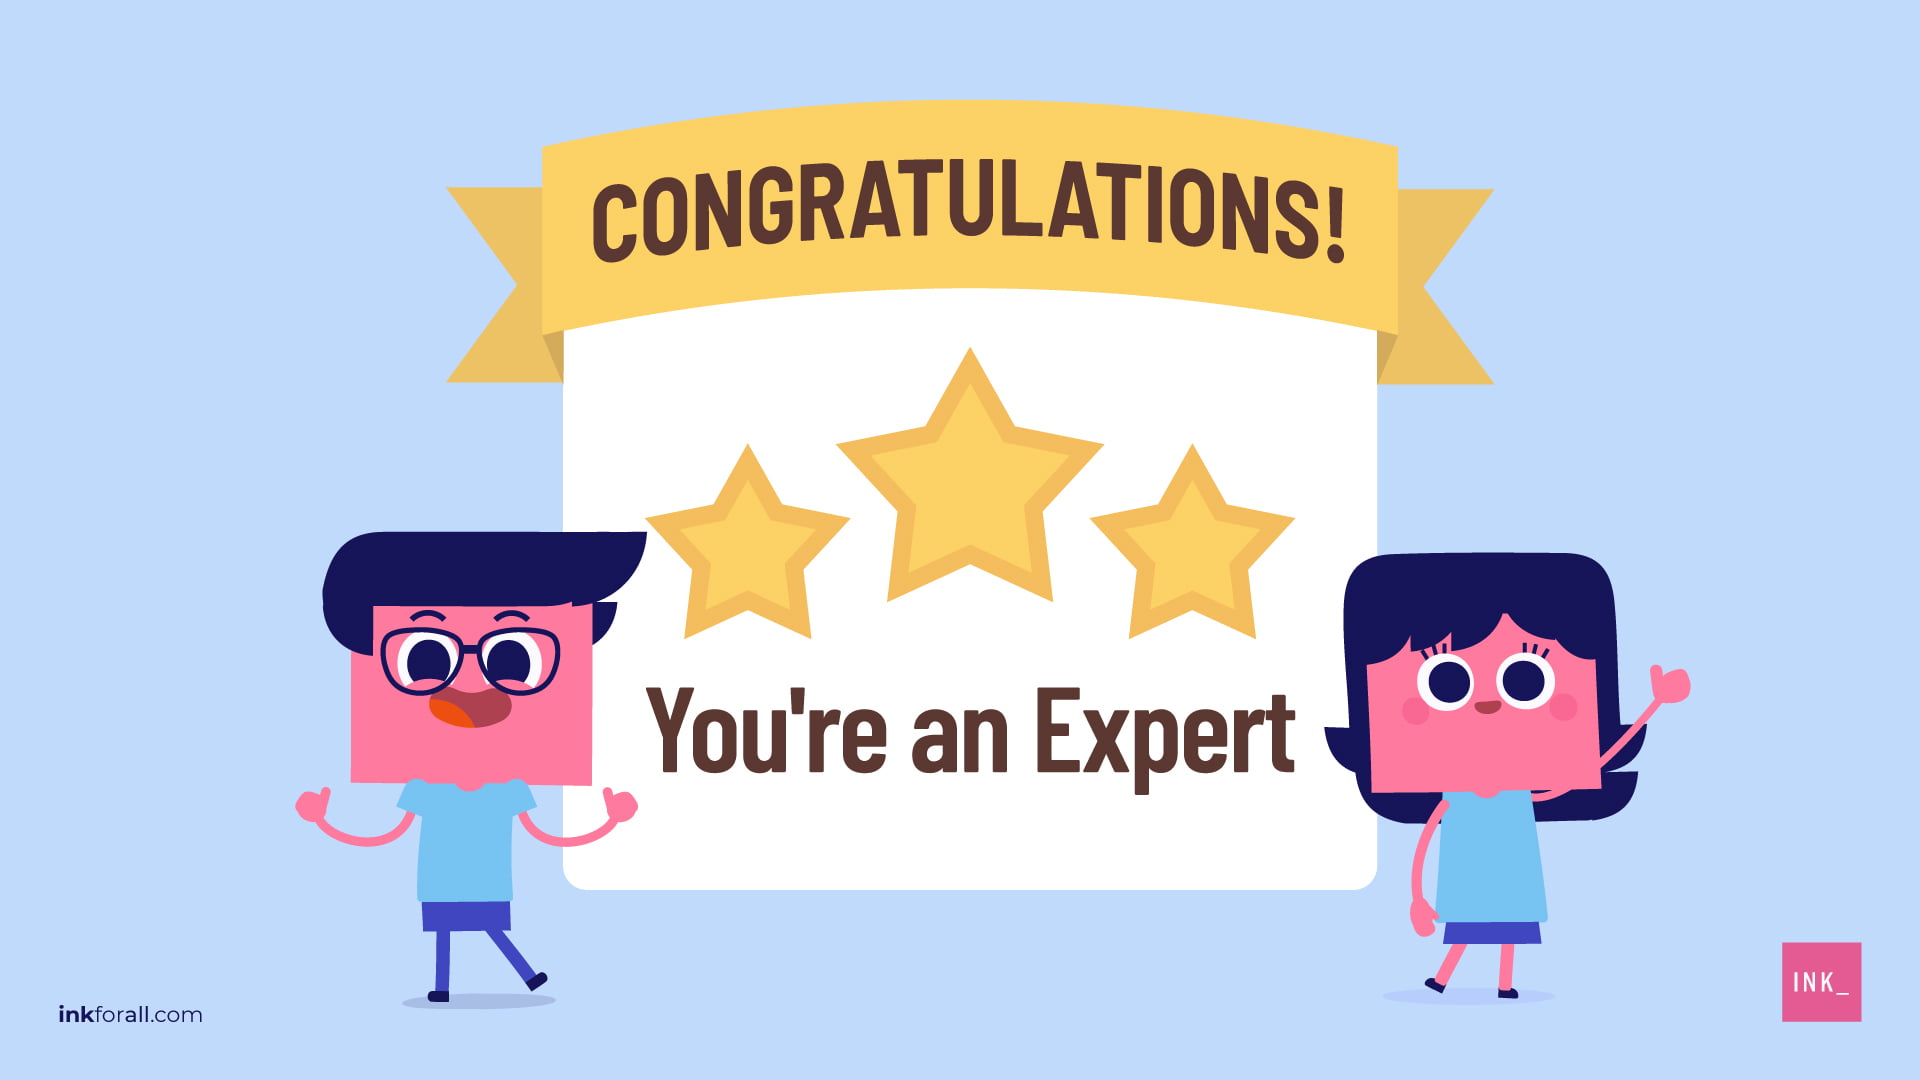 You're an expert!